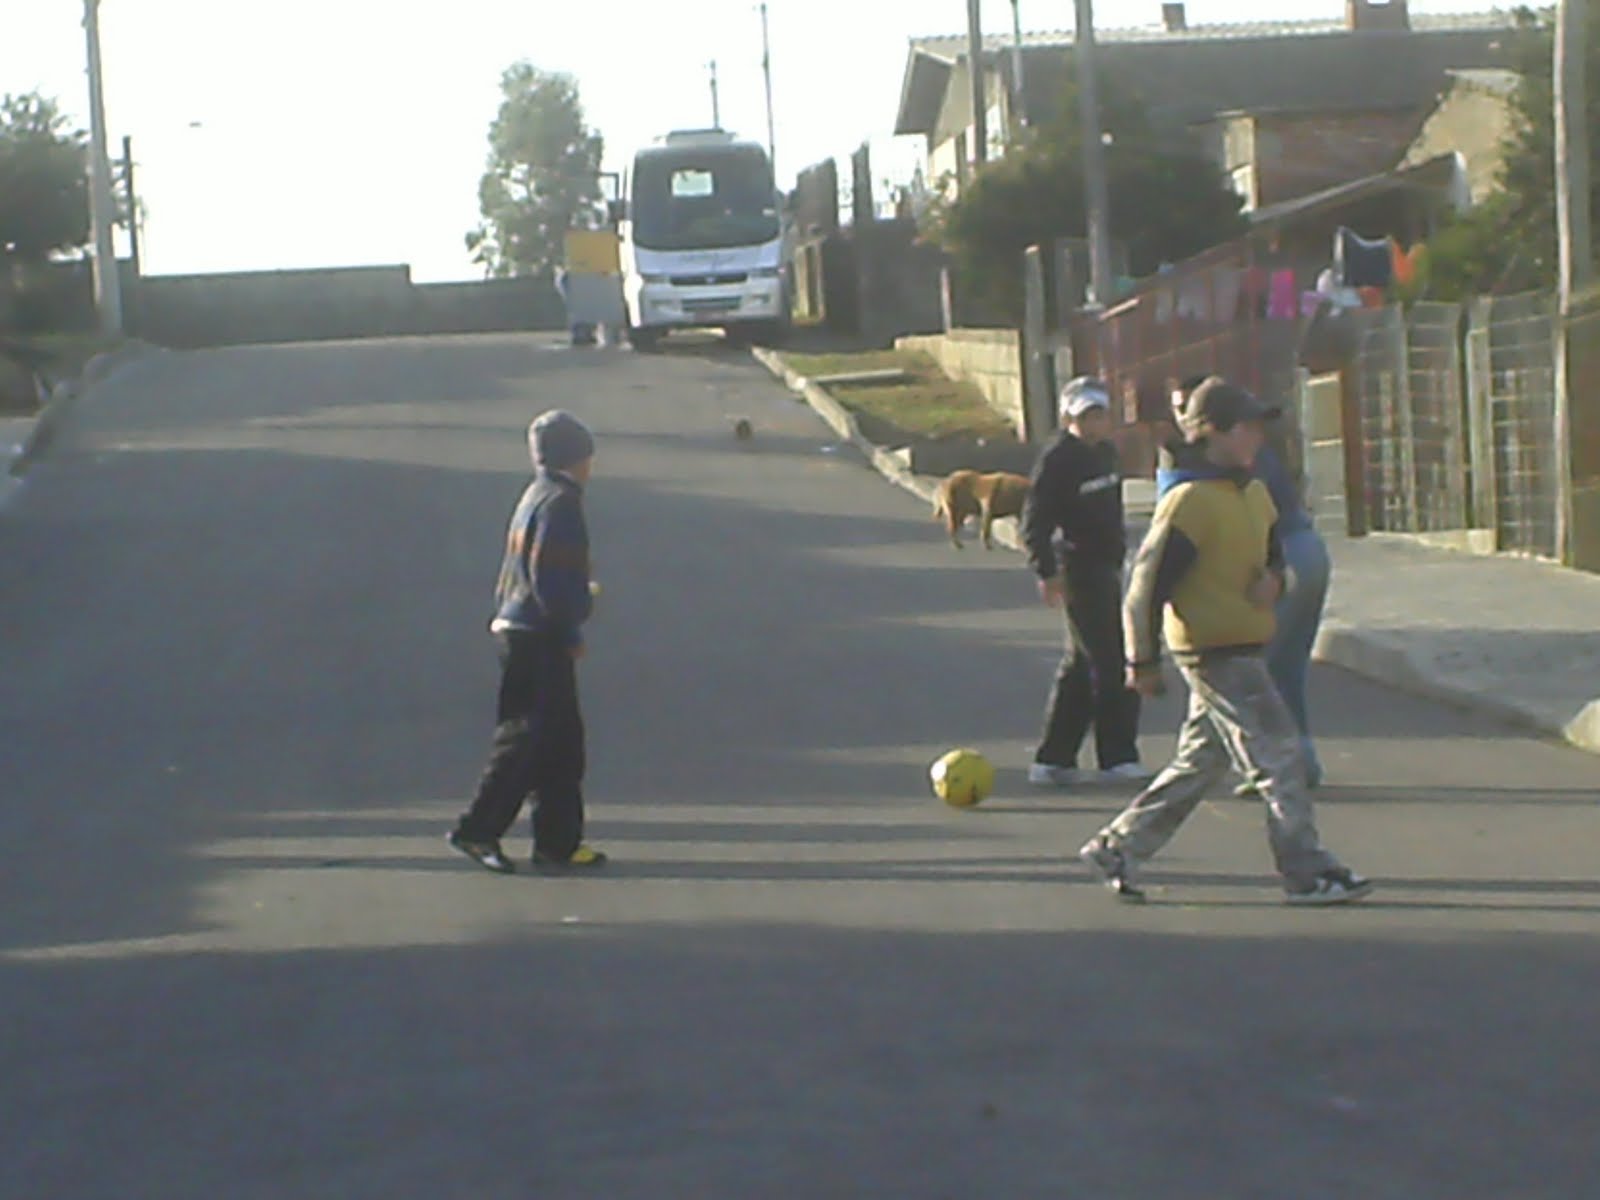 Jogando bola com os amigos na rua 